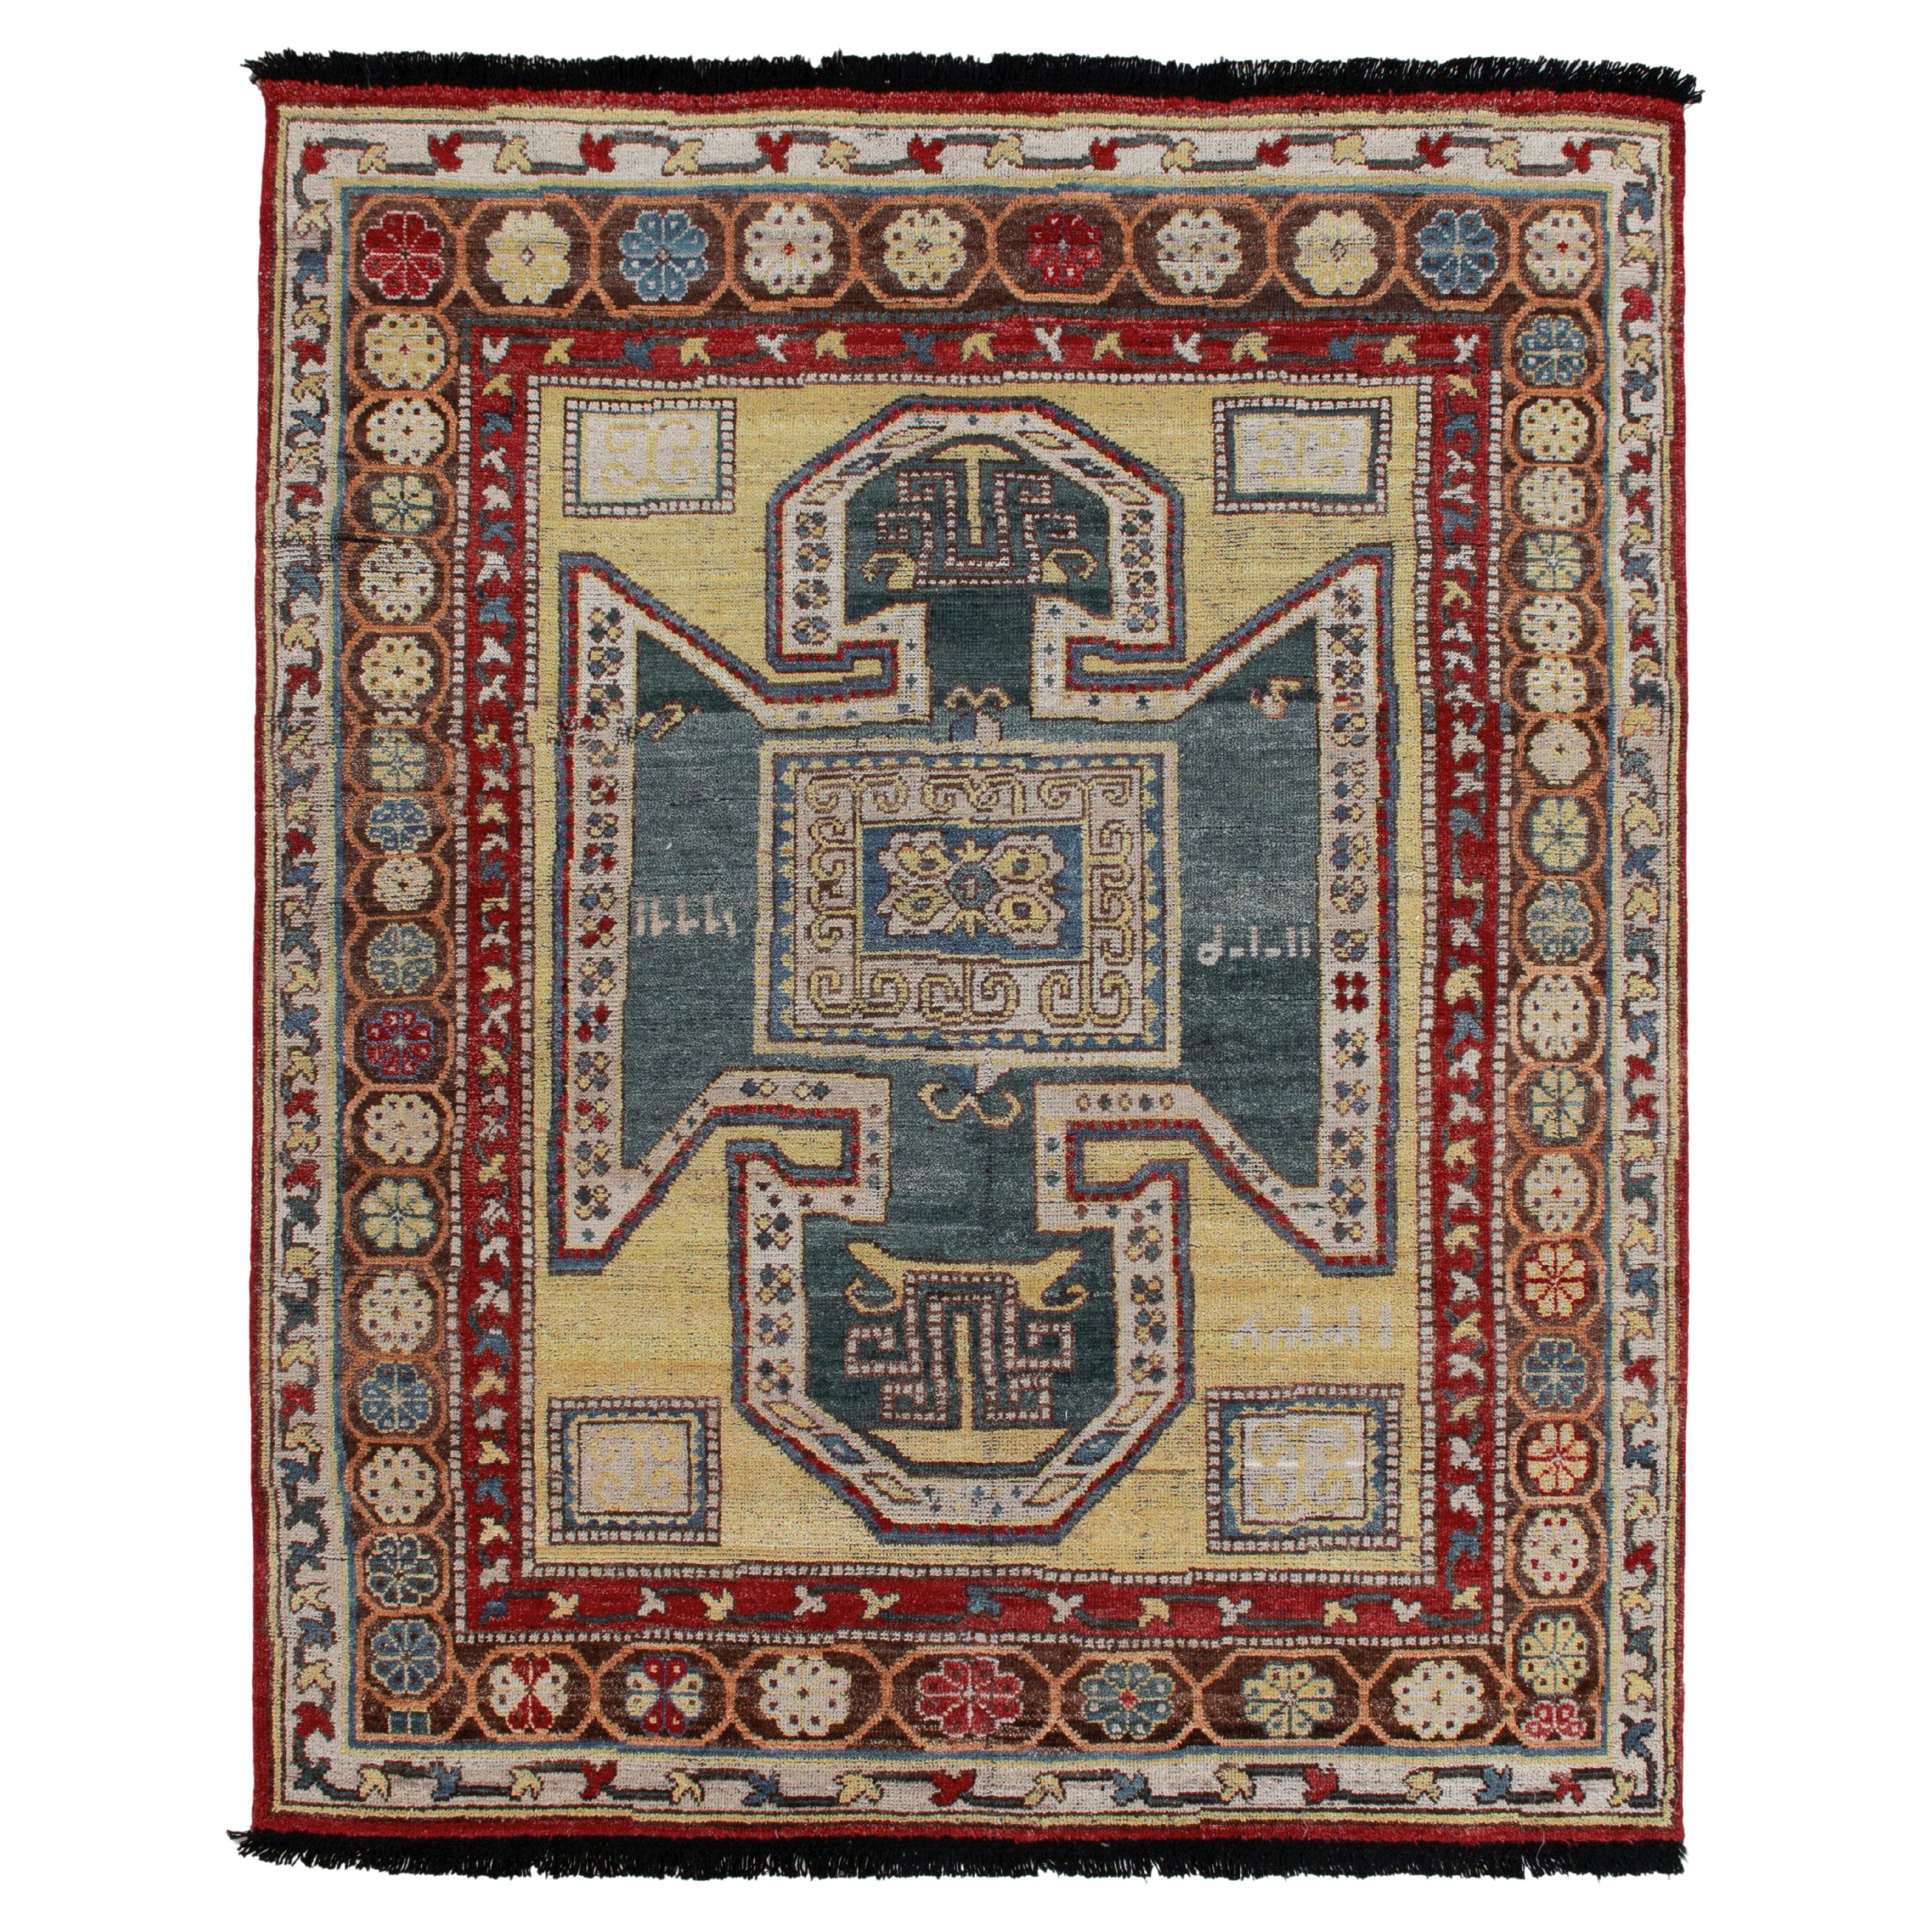 Tapis et tapis de style tribal de Kilim à motif géométrique bleu, rouge, beige et brun